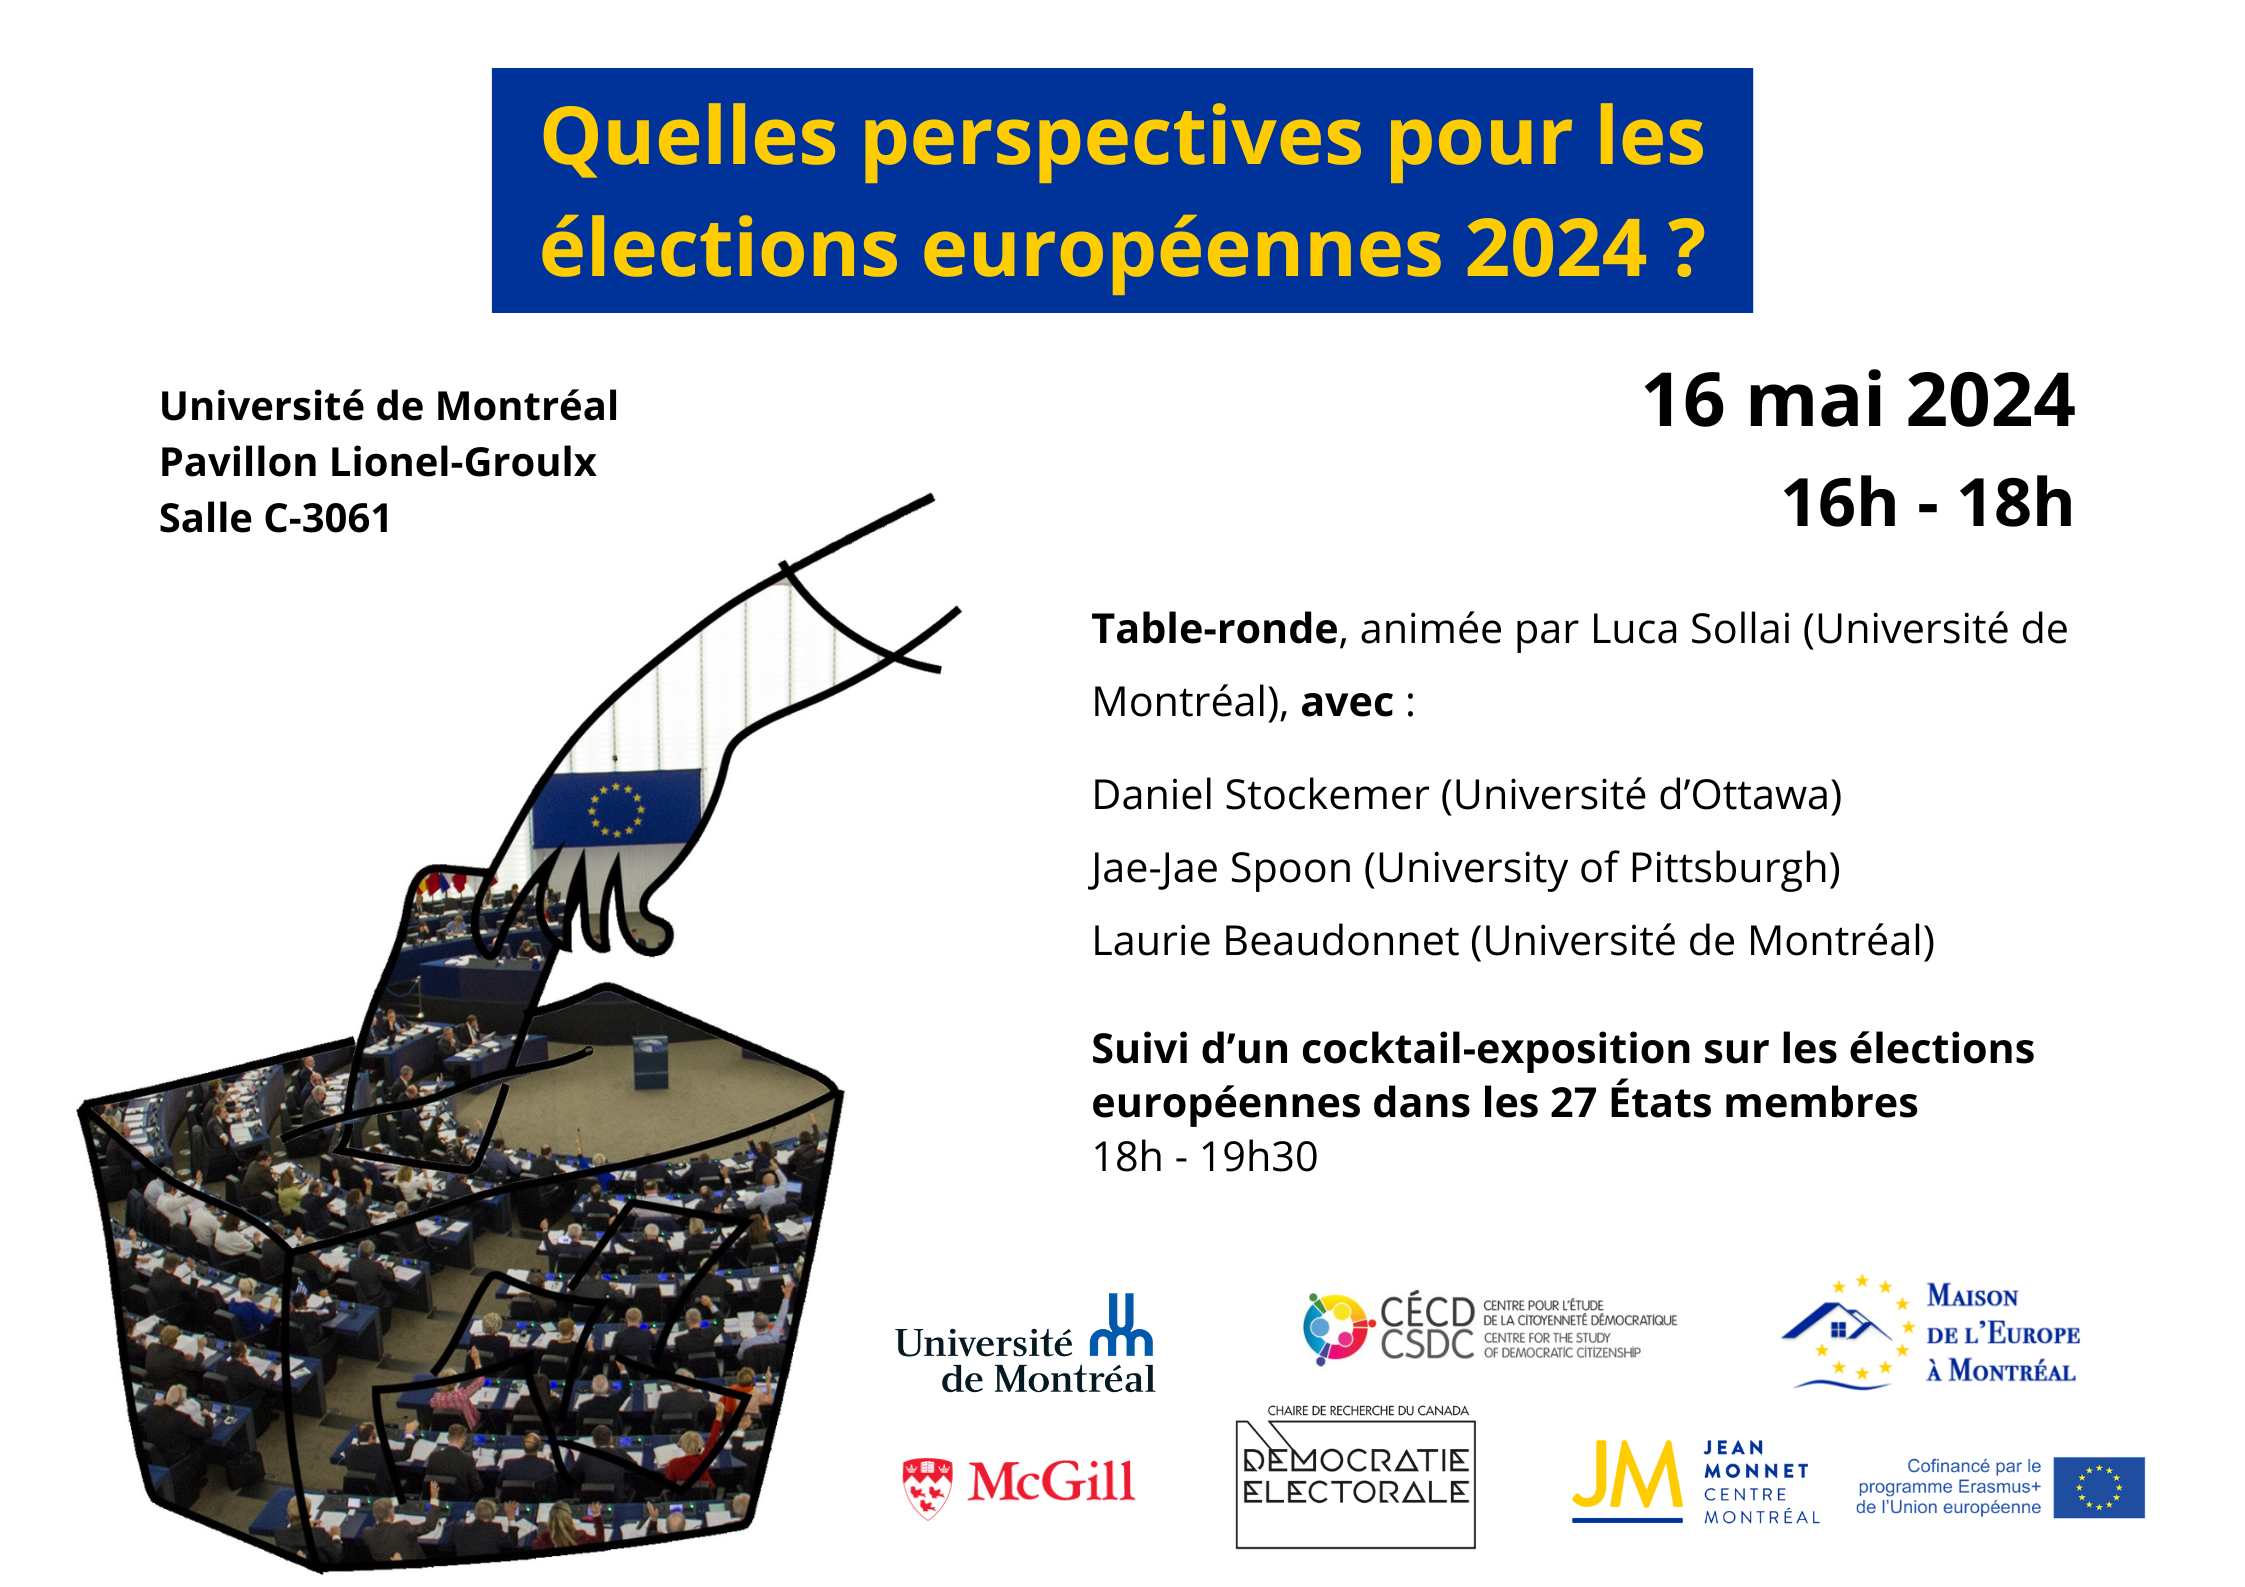 Quelles perspectives pour les élections européennes 2024 ? @ Salle C-3061 Pavillon Lionel Groulx, Université de Montréal